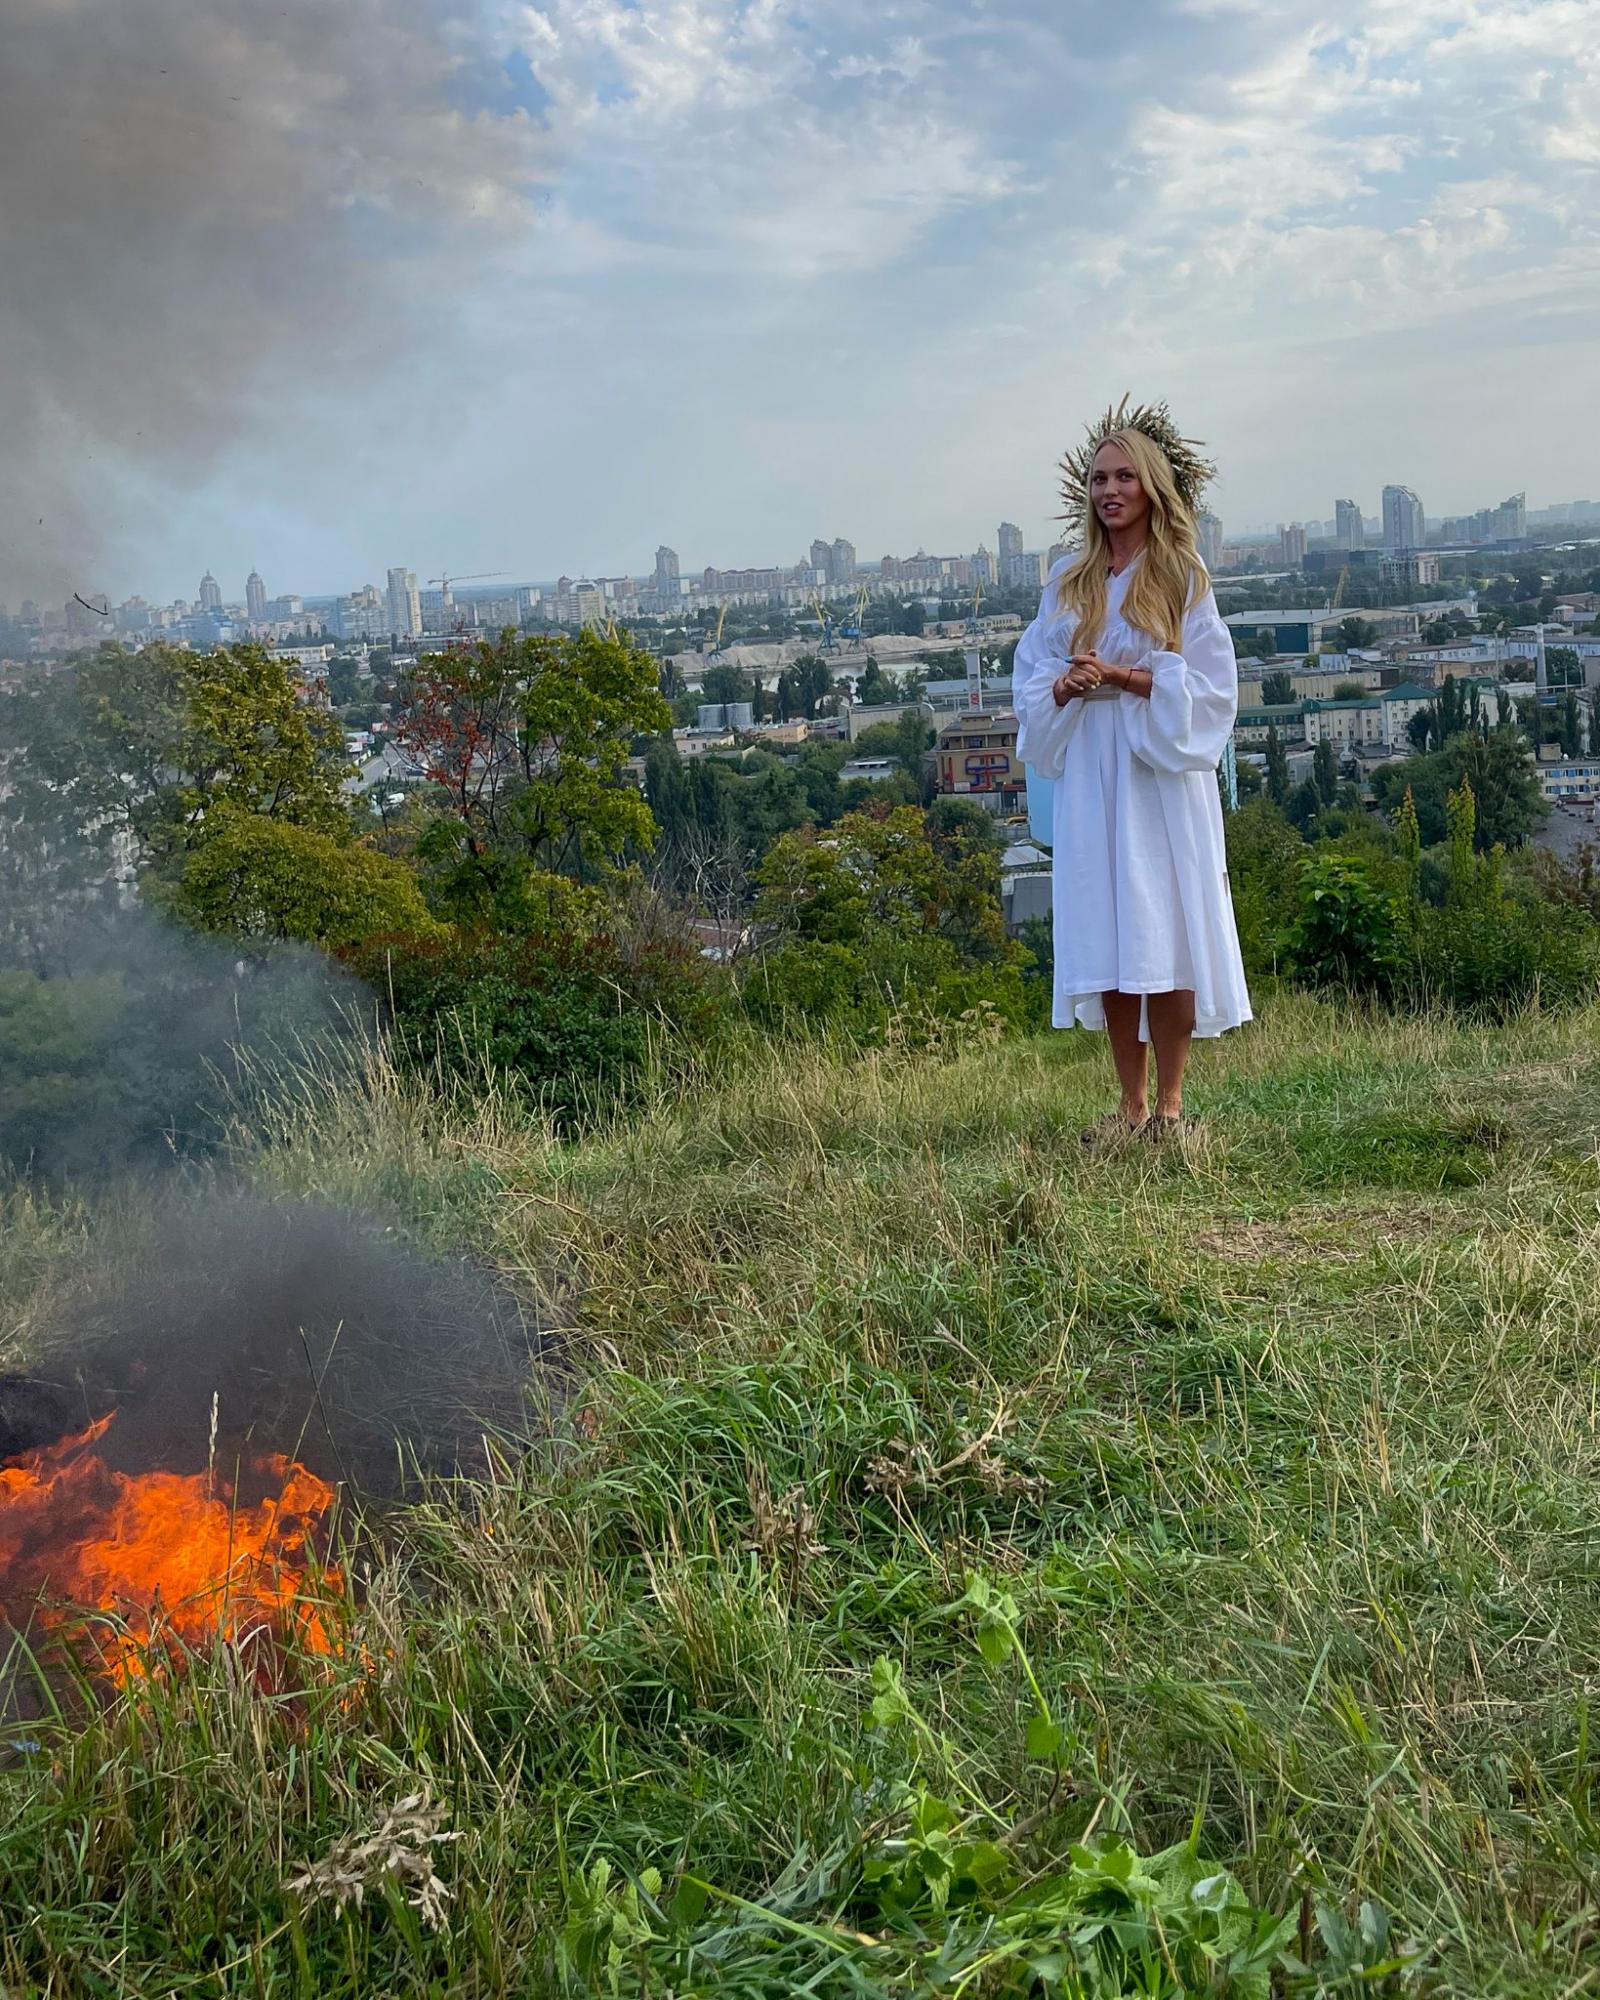 Оля Полякова спалила свій кокошник. Зробила вона це в містичний спосіб (фото)